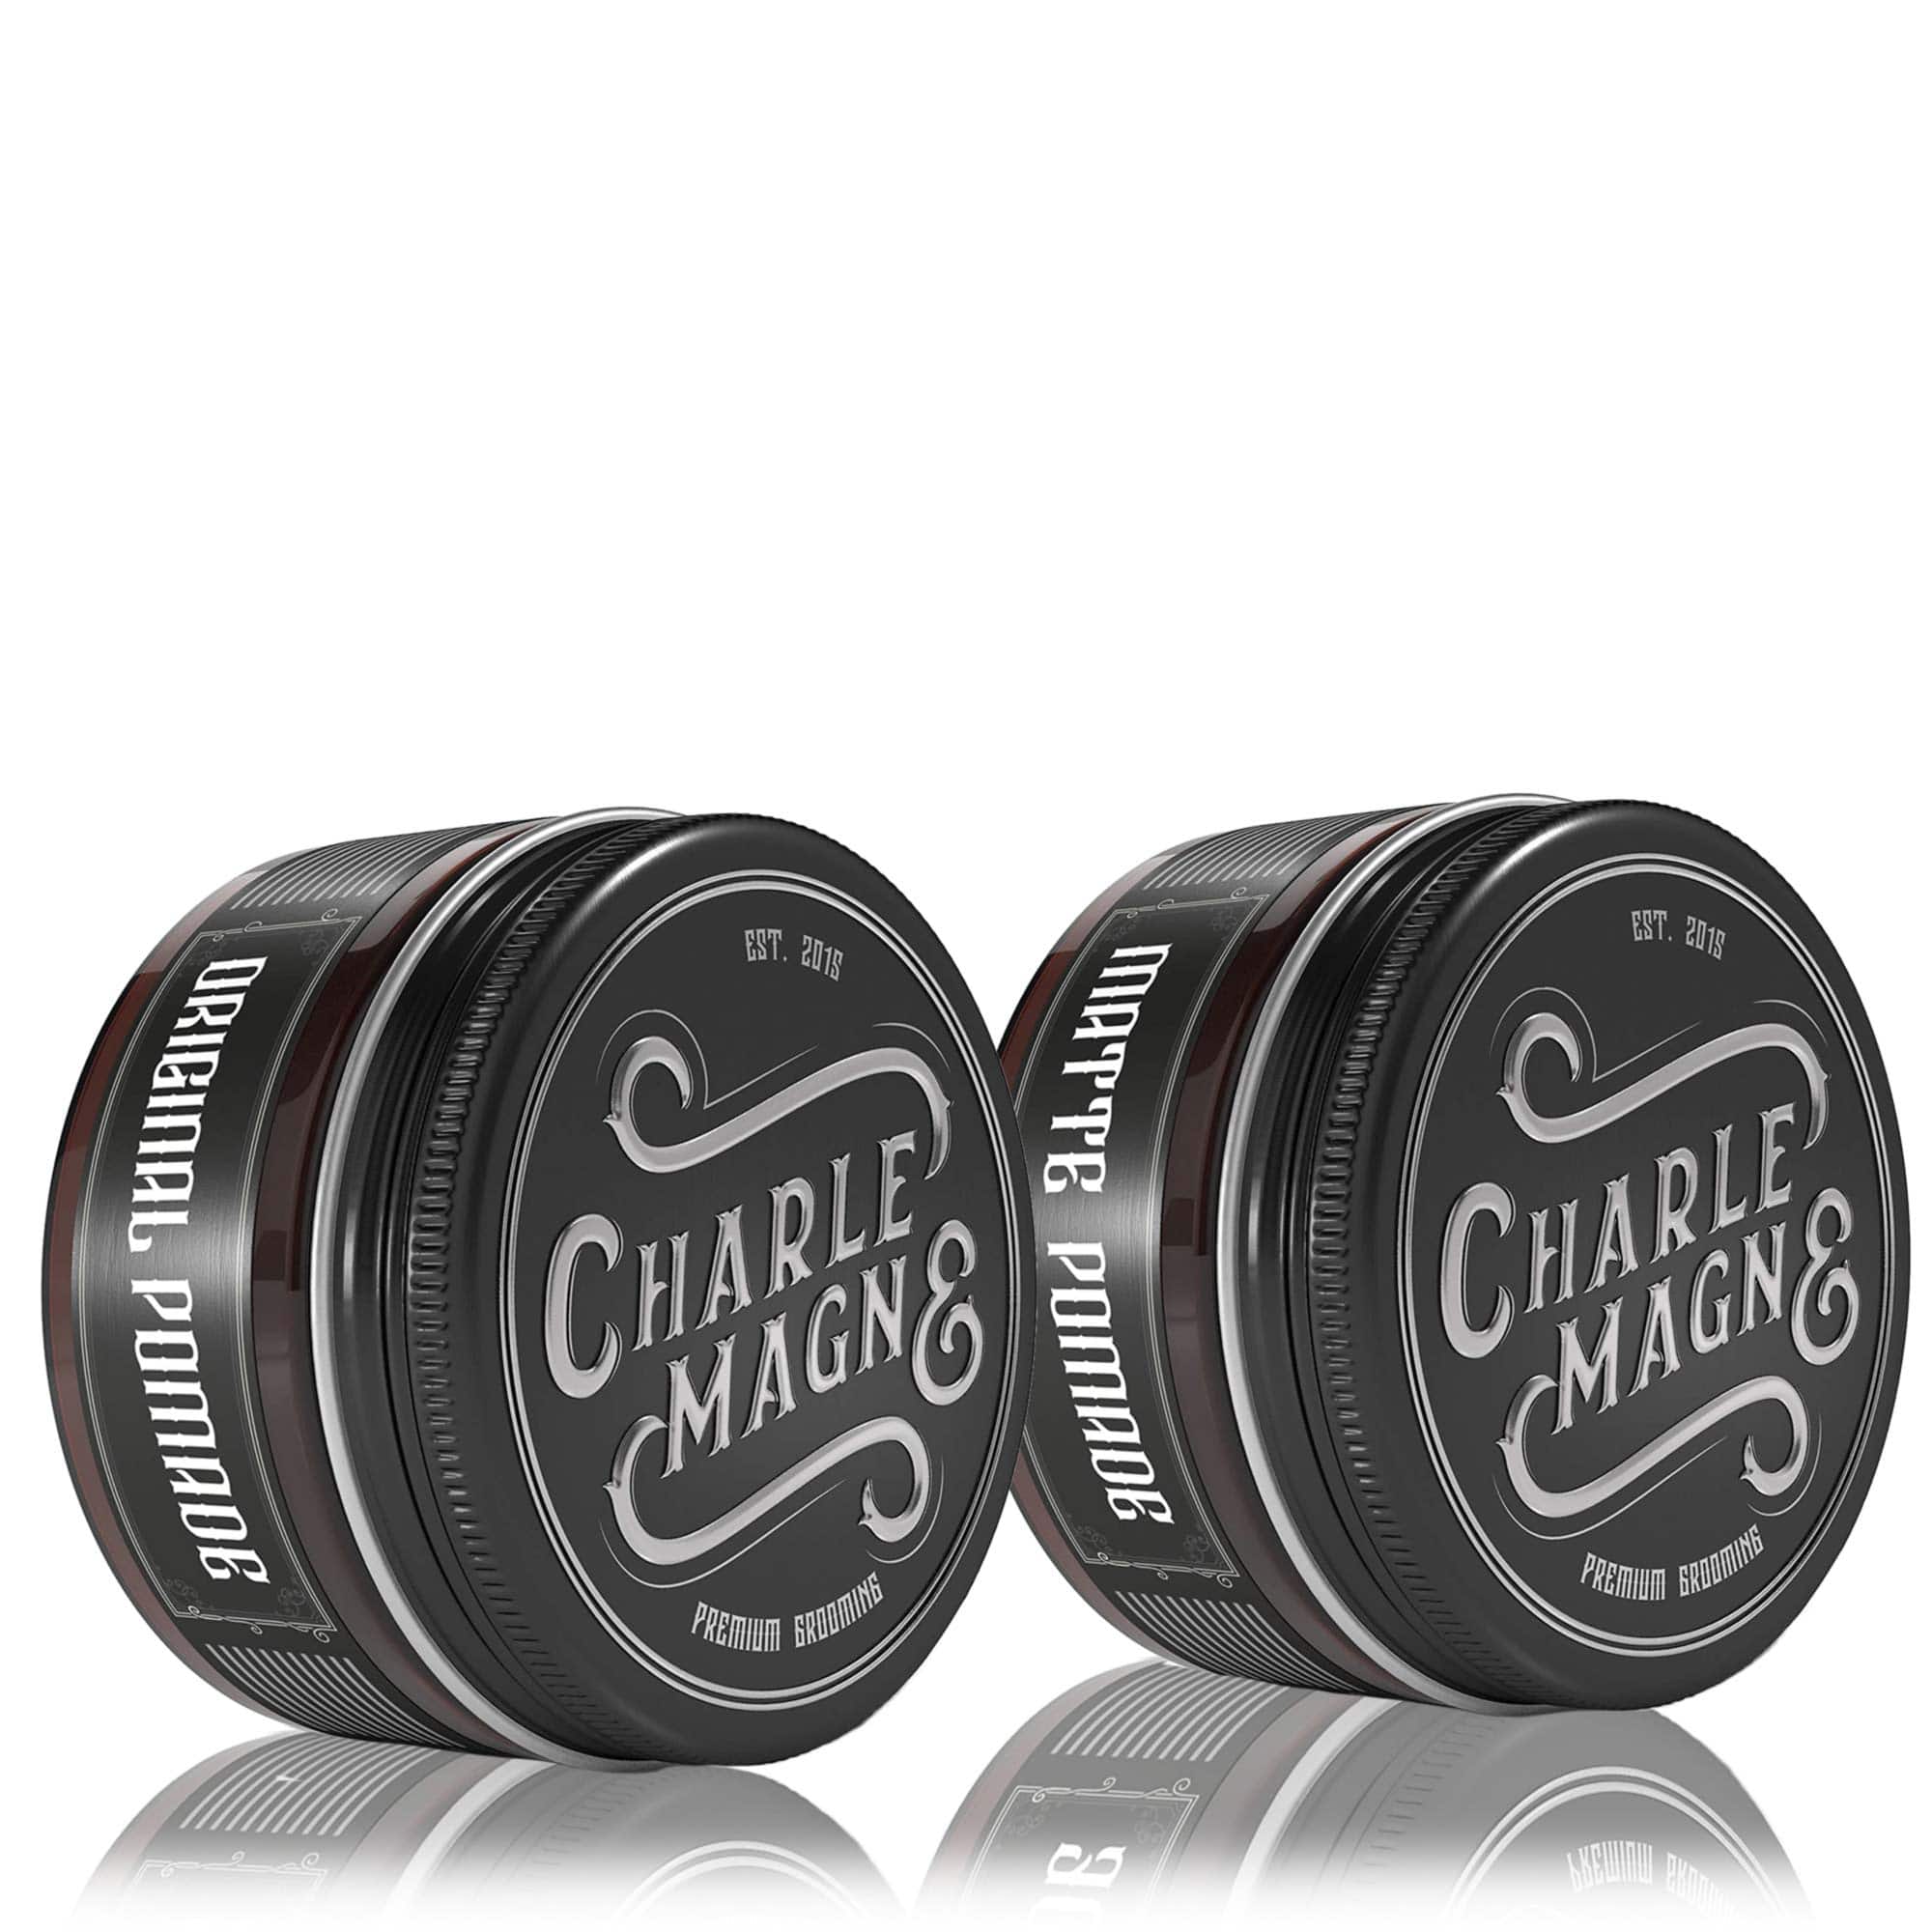 Charlemagne Premium • Haarstyling Made in Bartpflege und